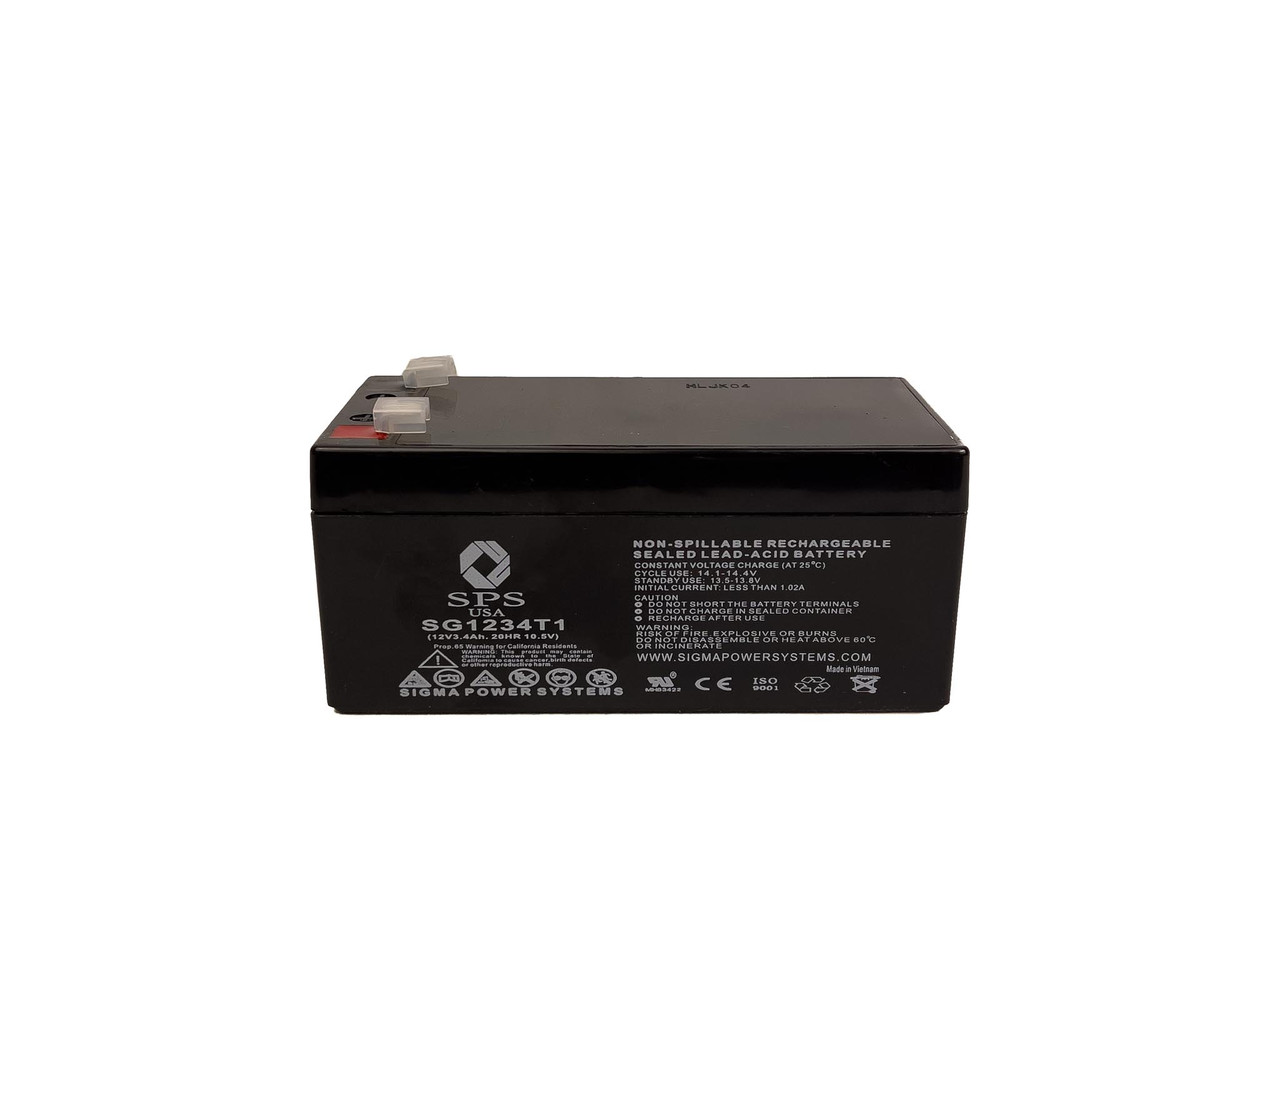 Black & Decker CST1200 10 Cordless Trimmer / Edger 12V 3.4Ah Battery